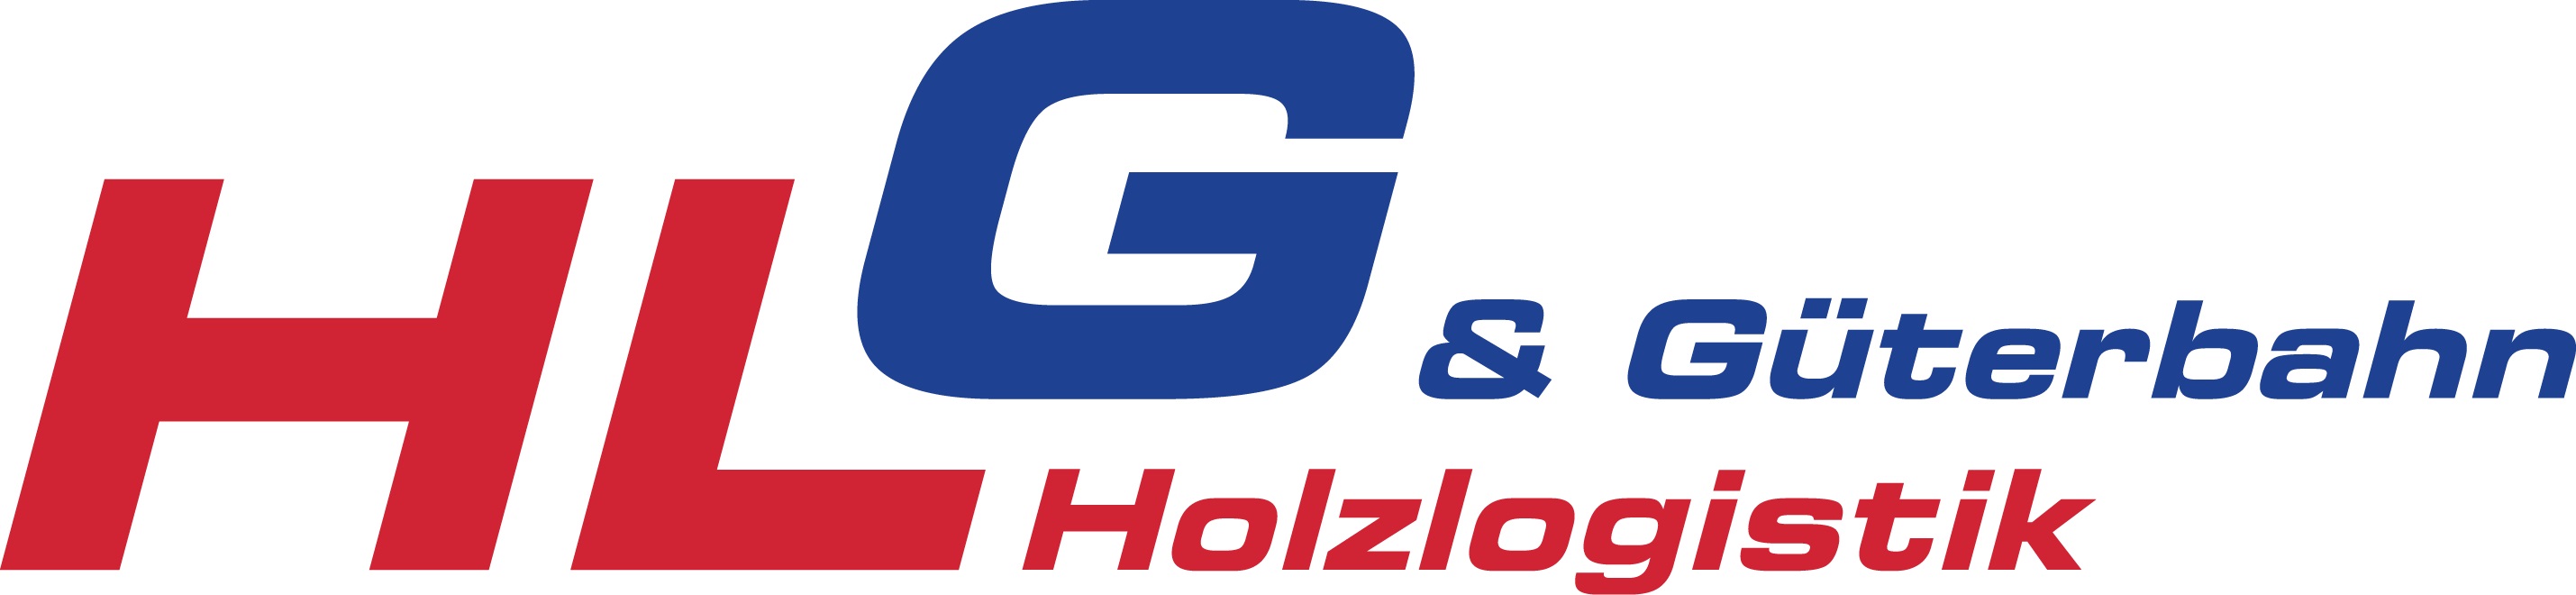 Holzlogistik & Güterbahn GmbH